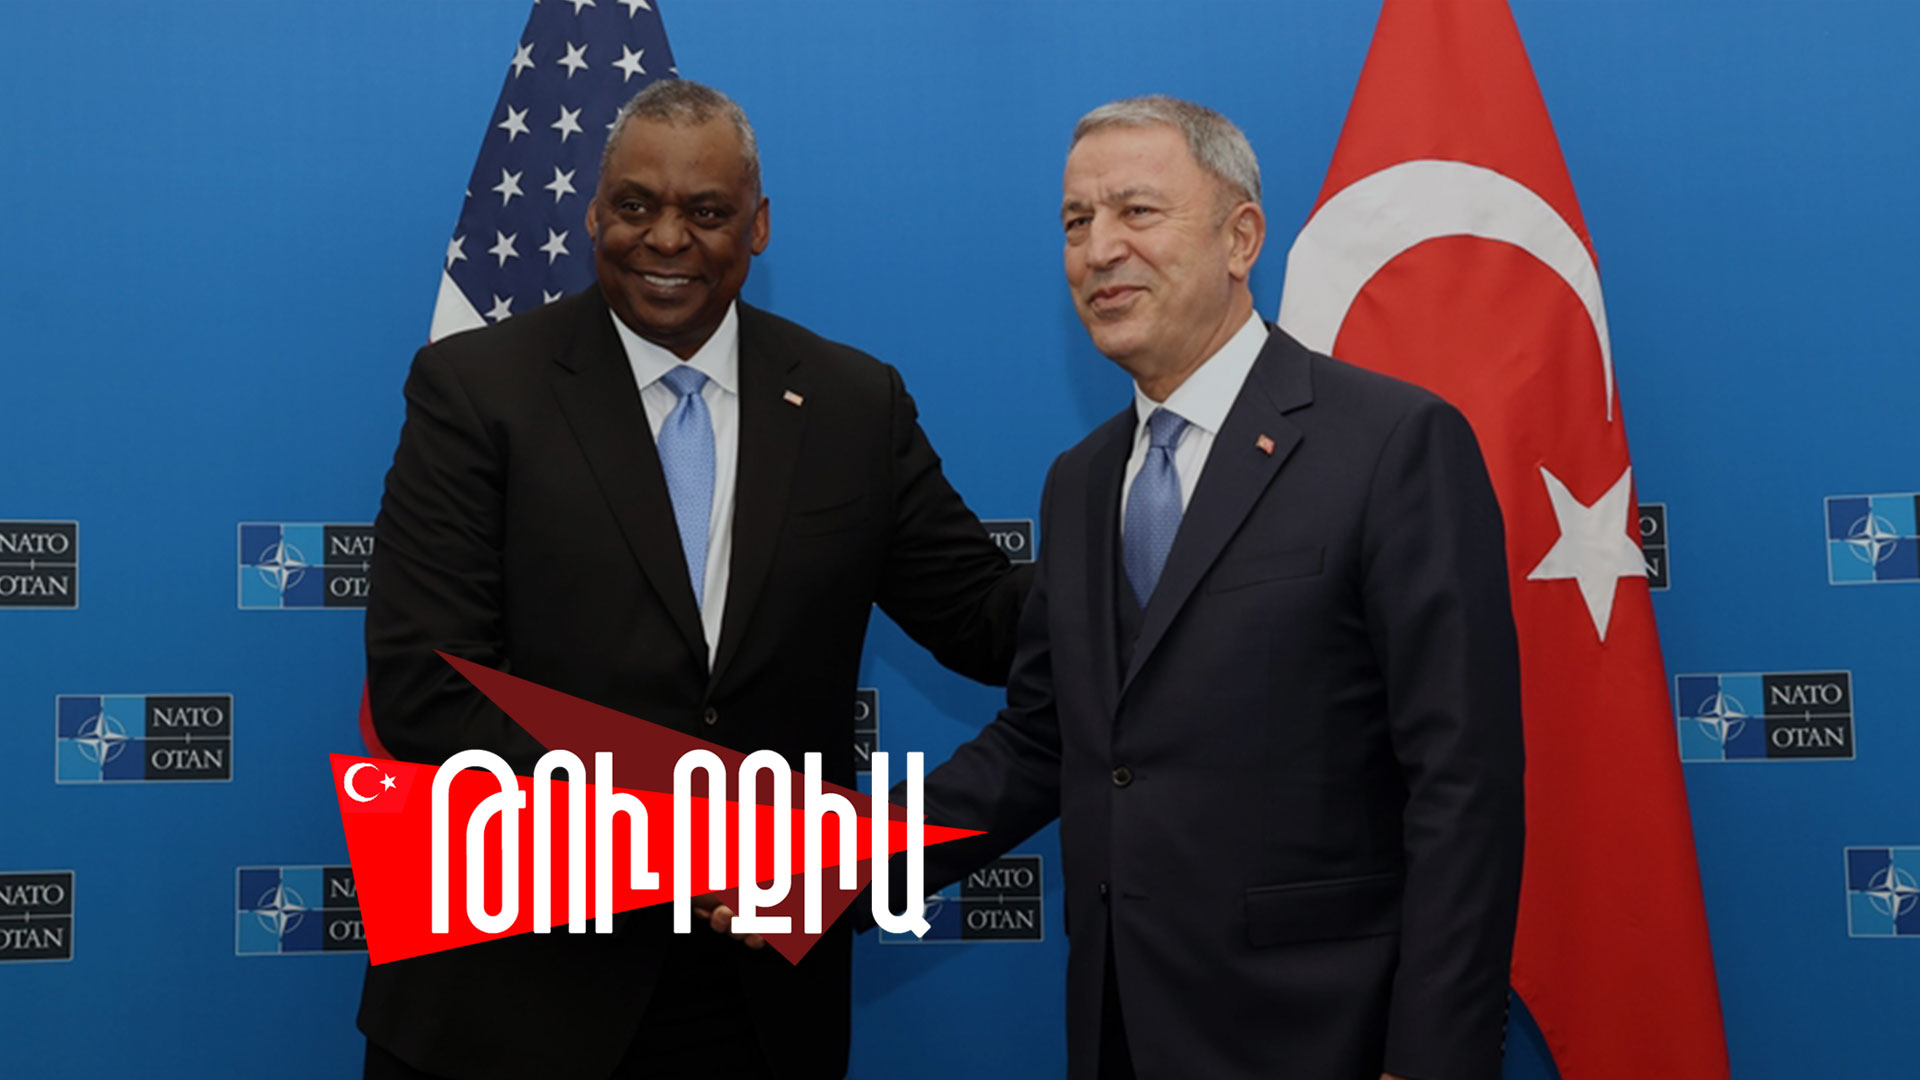 ԱՄՆ-ի դիրքորոշումը հետ է պահում Թուրքիային Սիրիայում ցամաքային գործողությունից